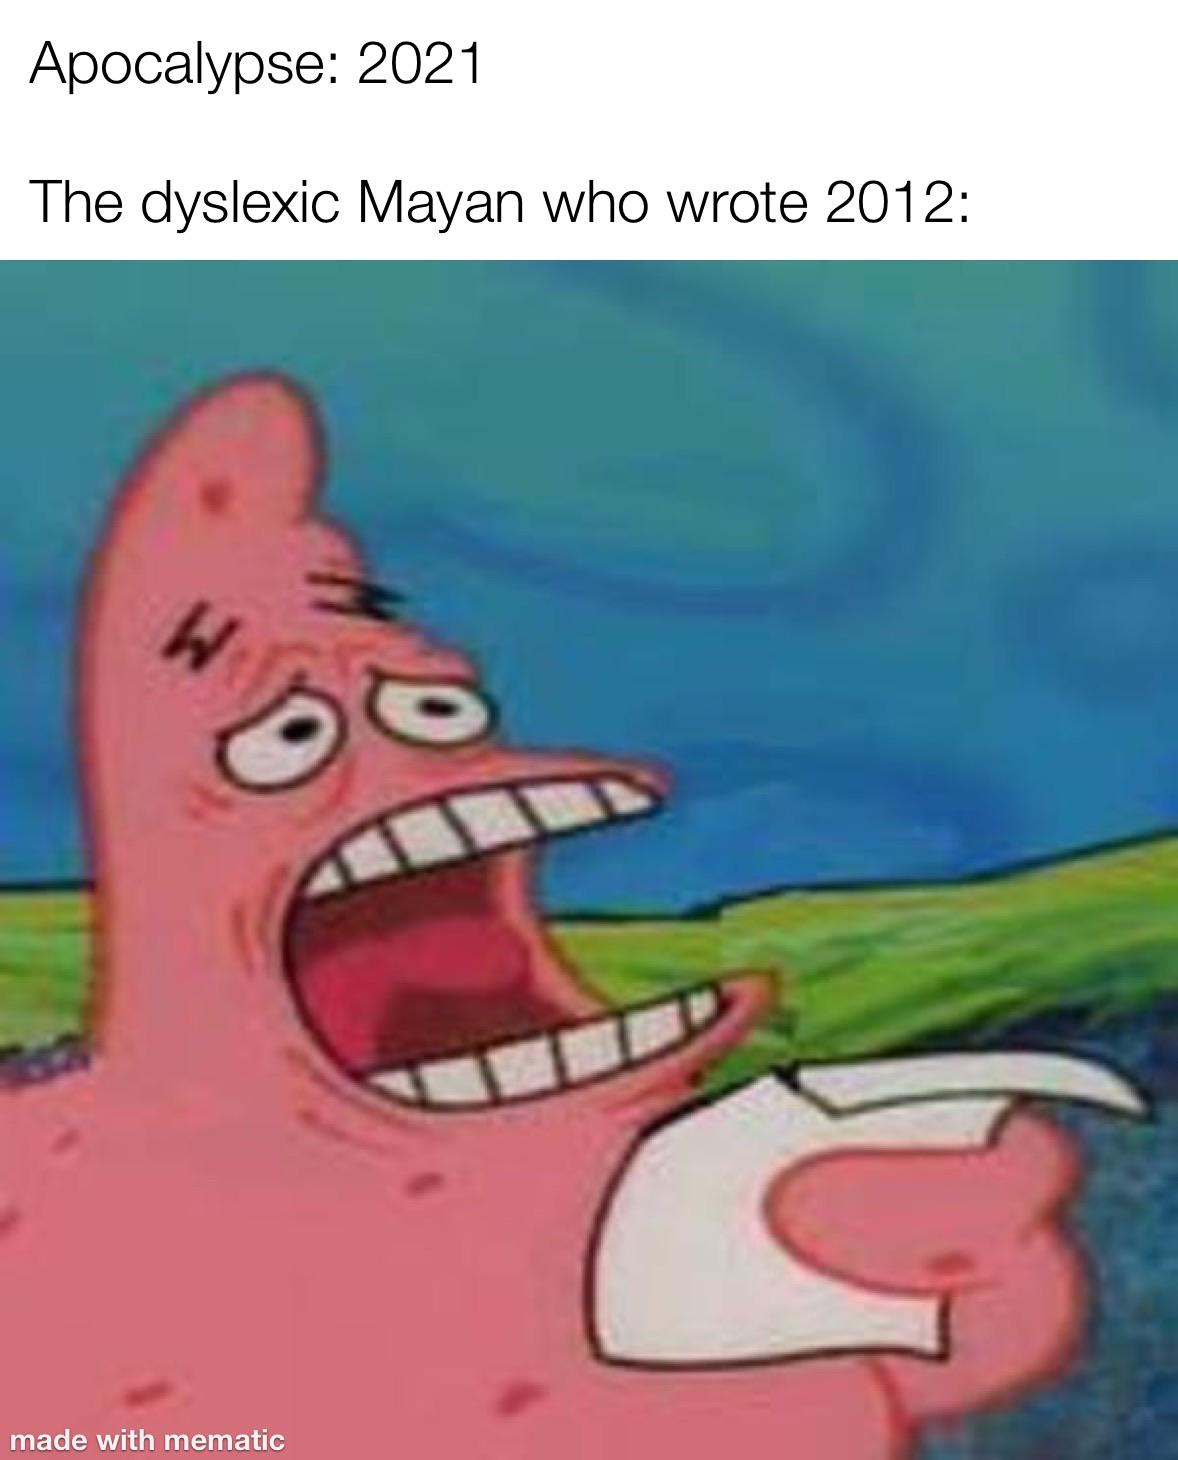 Spongebob, Apocalypse Spongebob Memes Spongebob, Apocalypse text: Apocalypse: 2021 The dyslexic Mayan who wrote 2012: made with mematic 